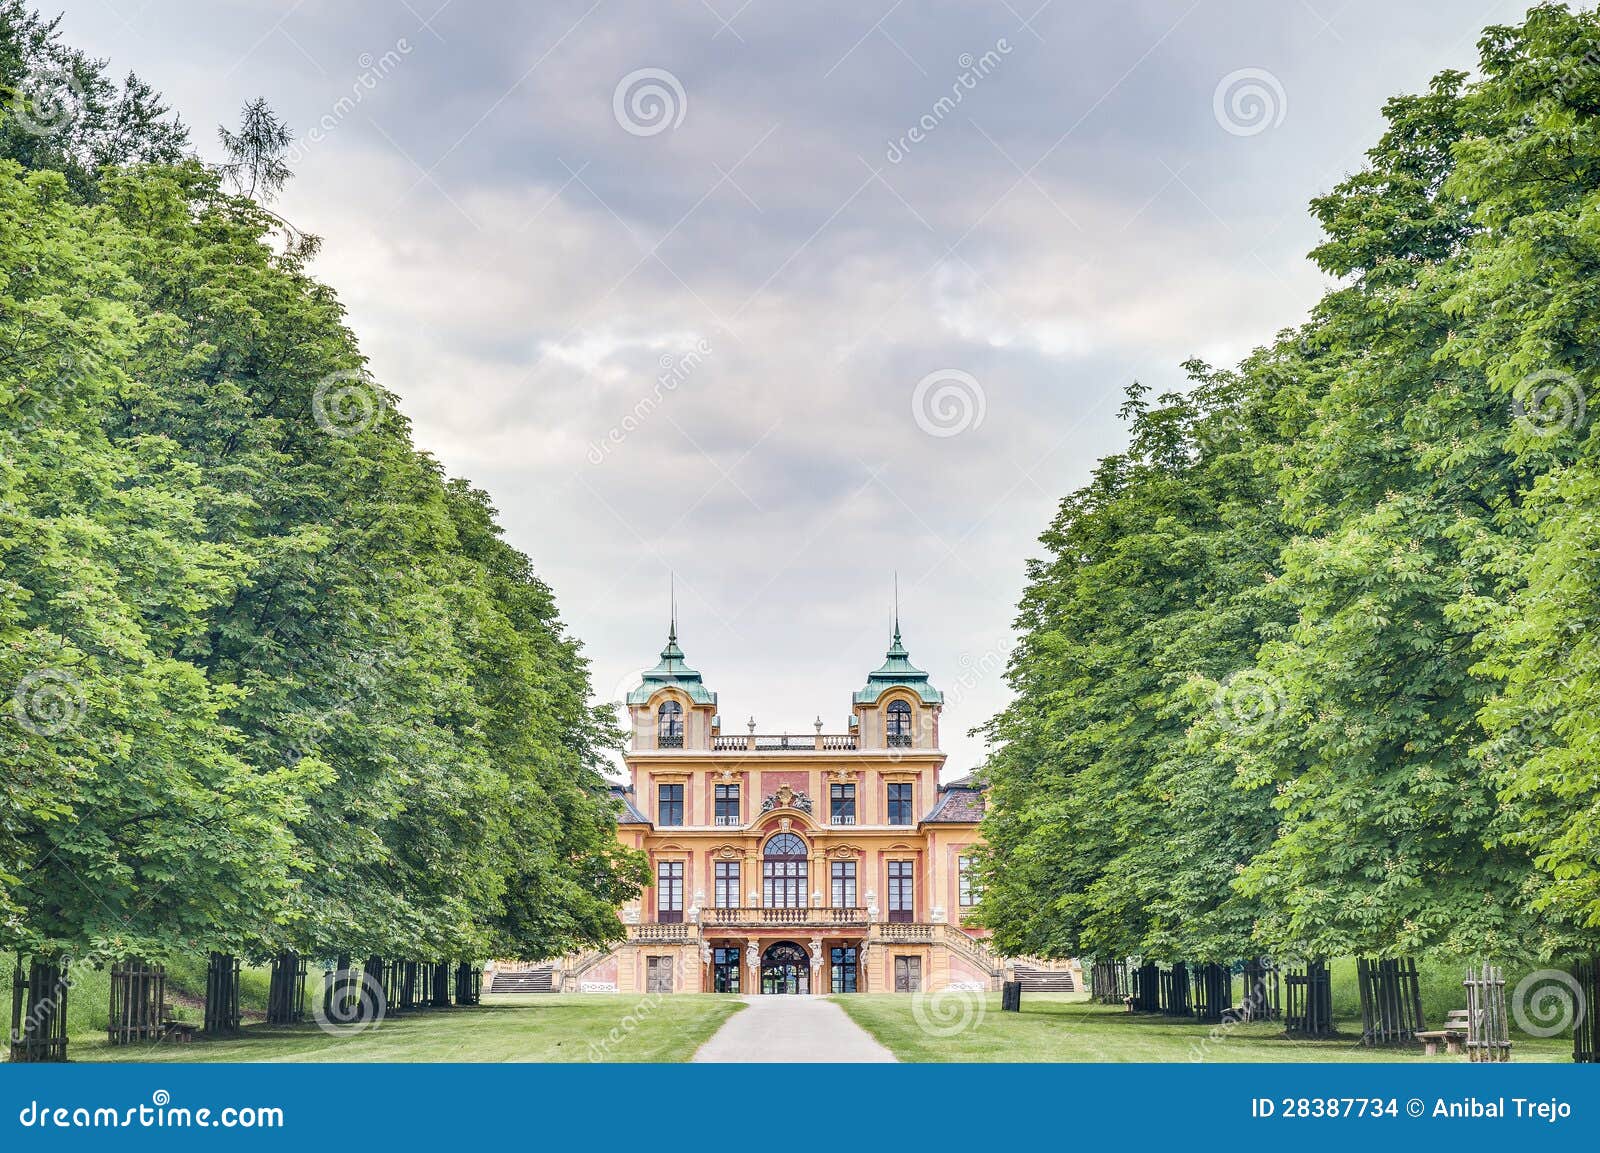 El Schloss preferido en Ludwigsburg, Alemania. La casa de cazadores y la residencia Schloss preferido del verano en Ludwigsburg, Alemania